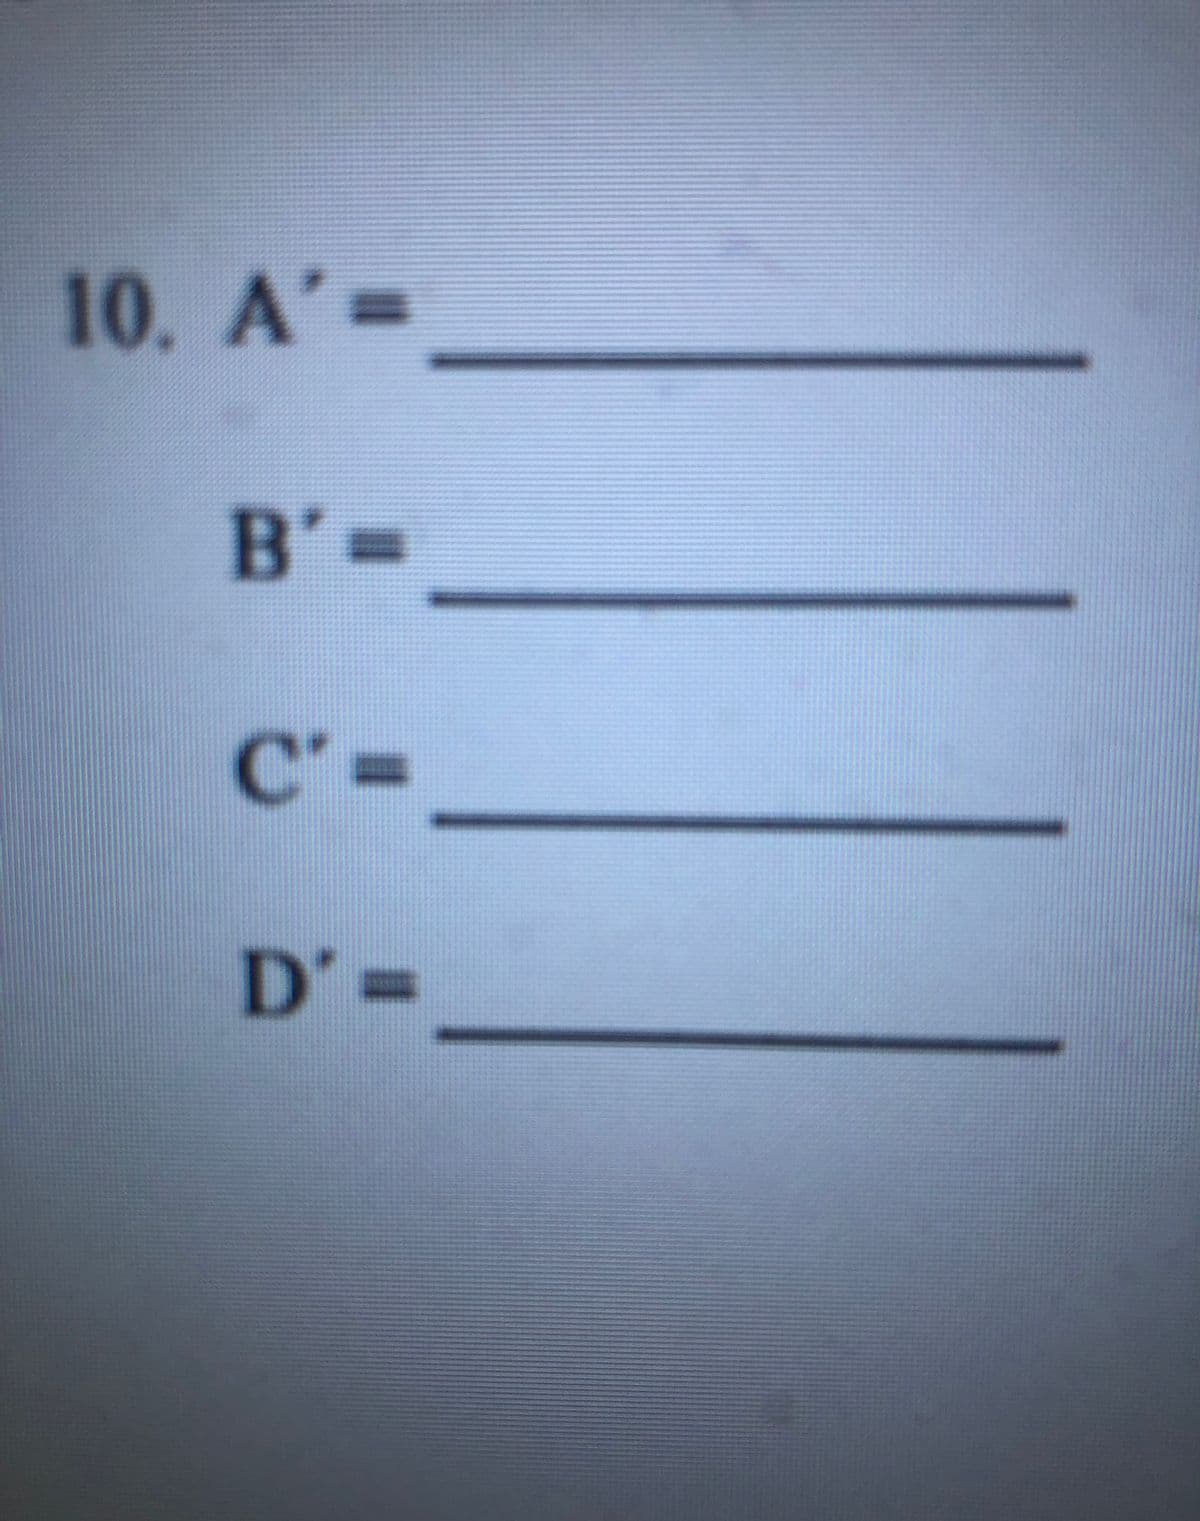 10. A'=
B'=
C'=
D'3=
